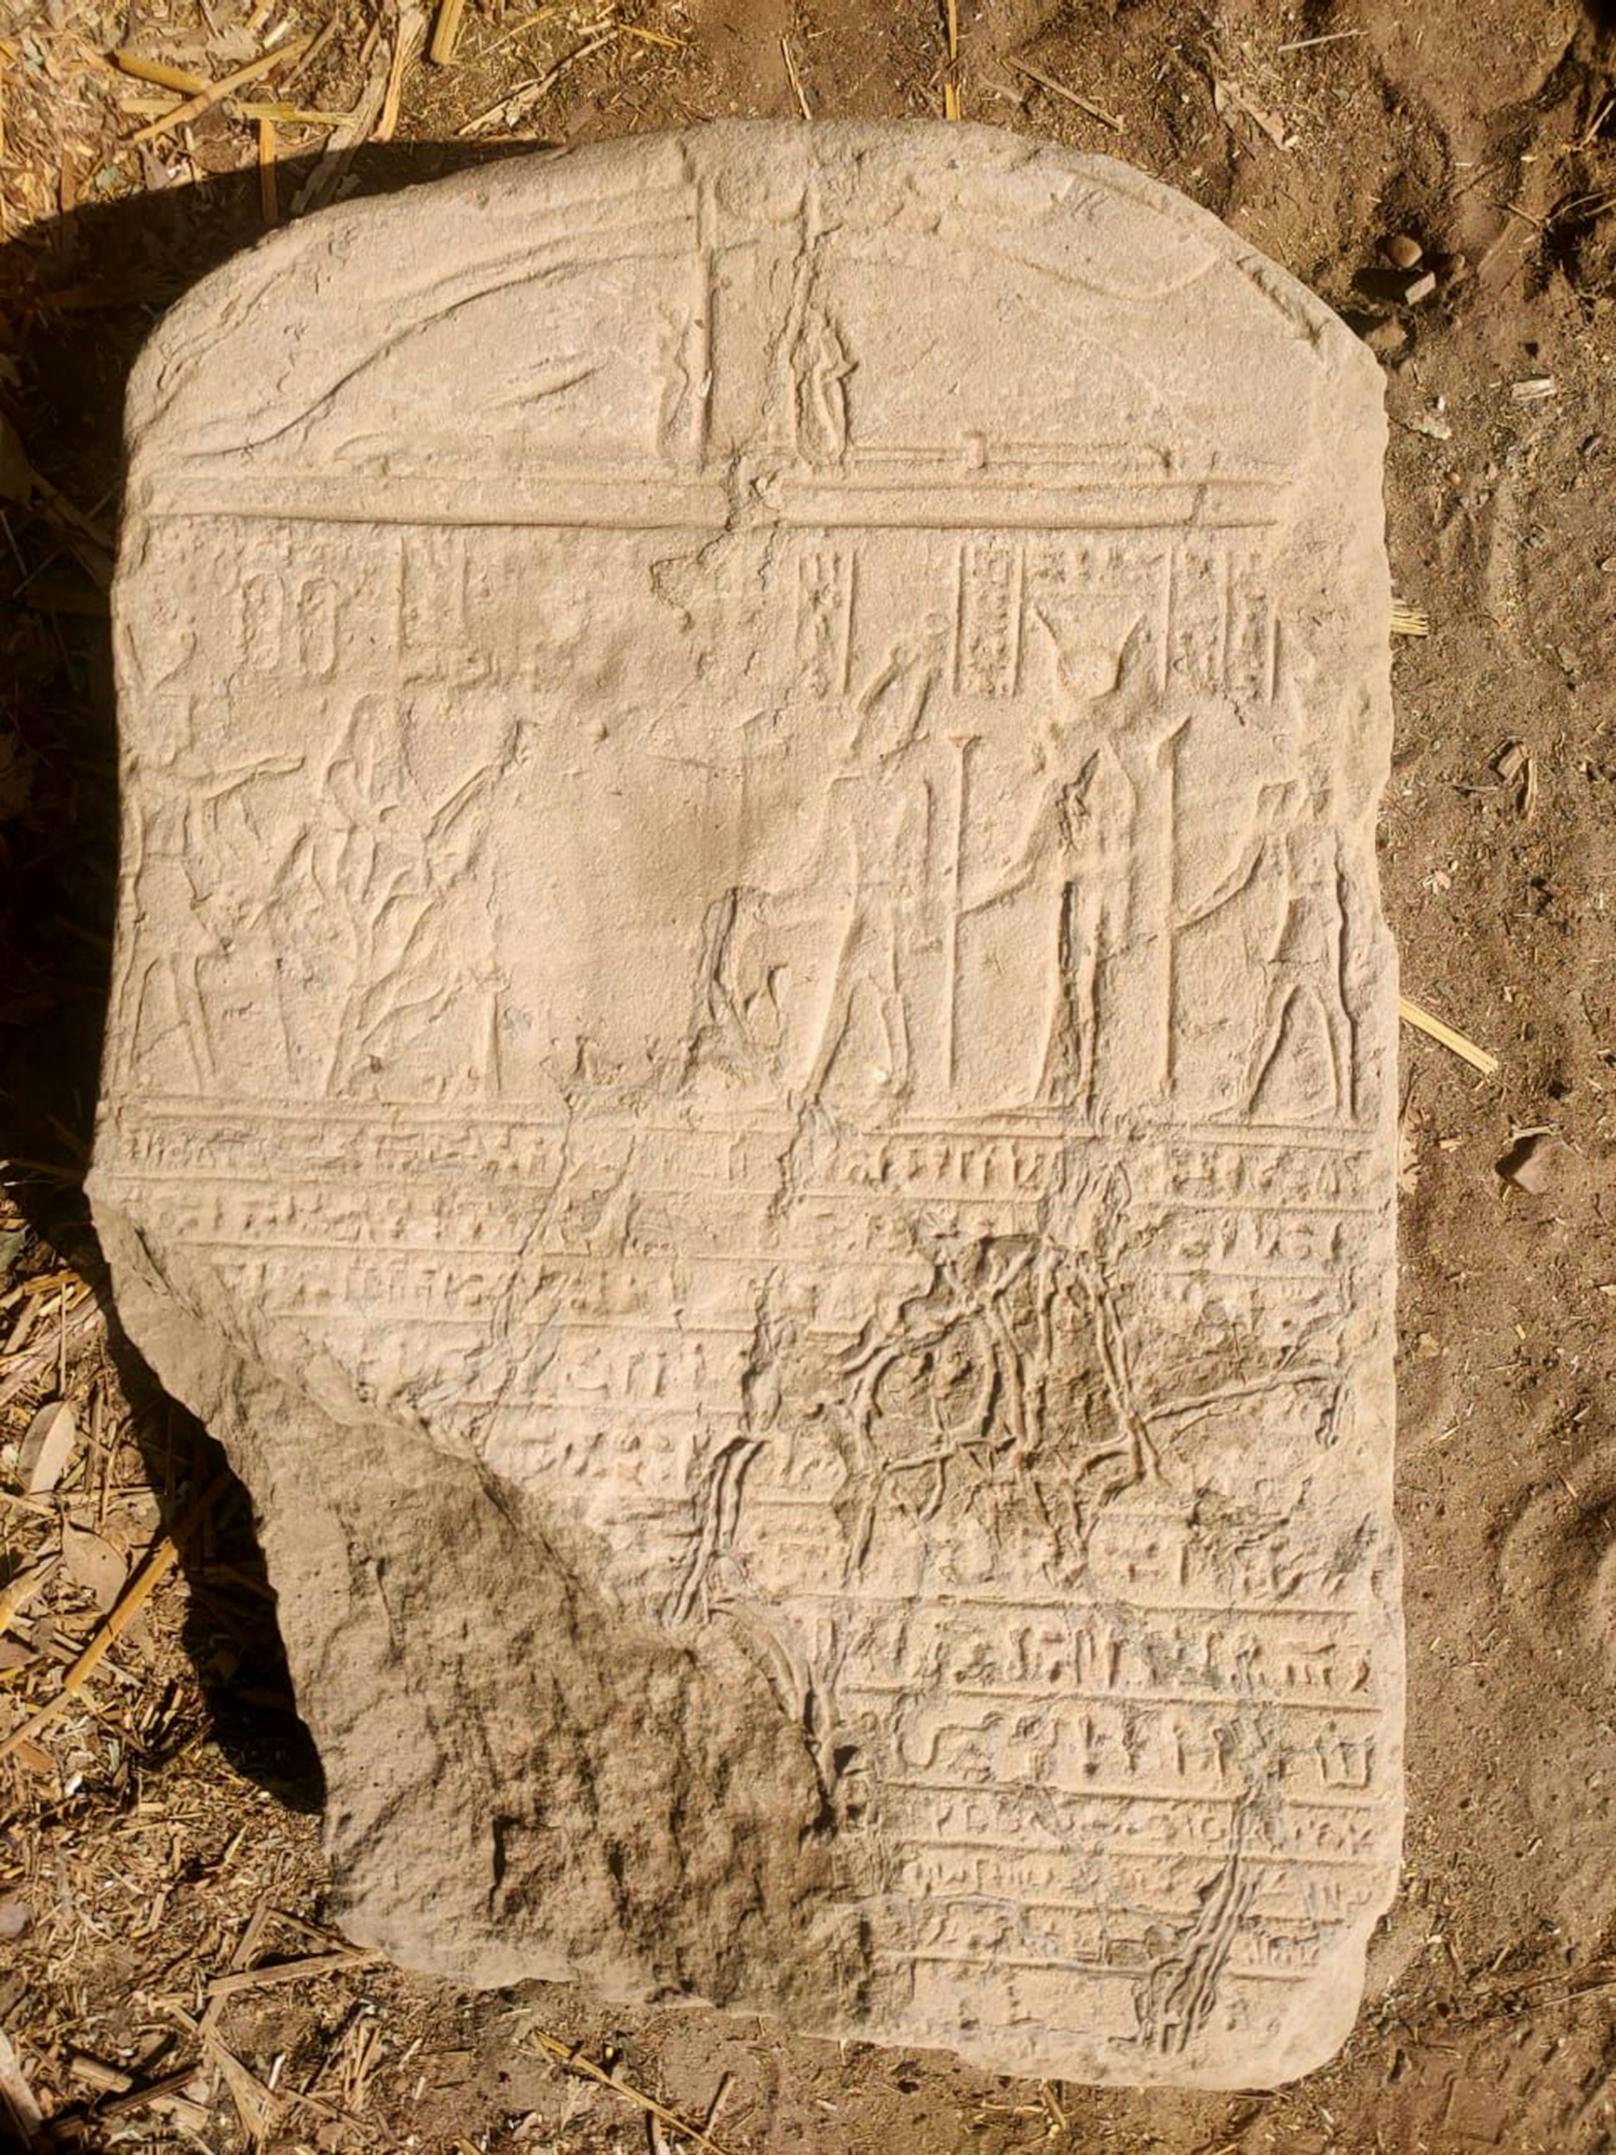 Eine römische Stele mit altägyptischen Inschriften und Hieroglyphen soll darauf hinweisen, dass es bei der Sphinx um ein Abbild des römischen Kaiser Claudius handeln könnte.